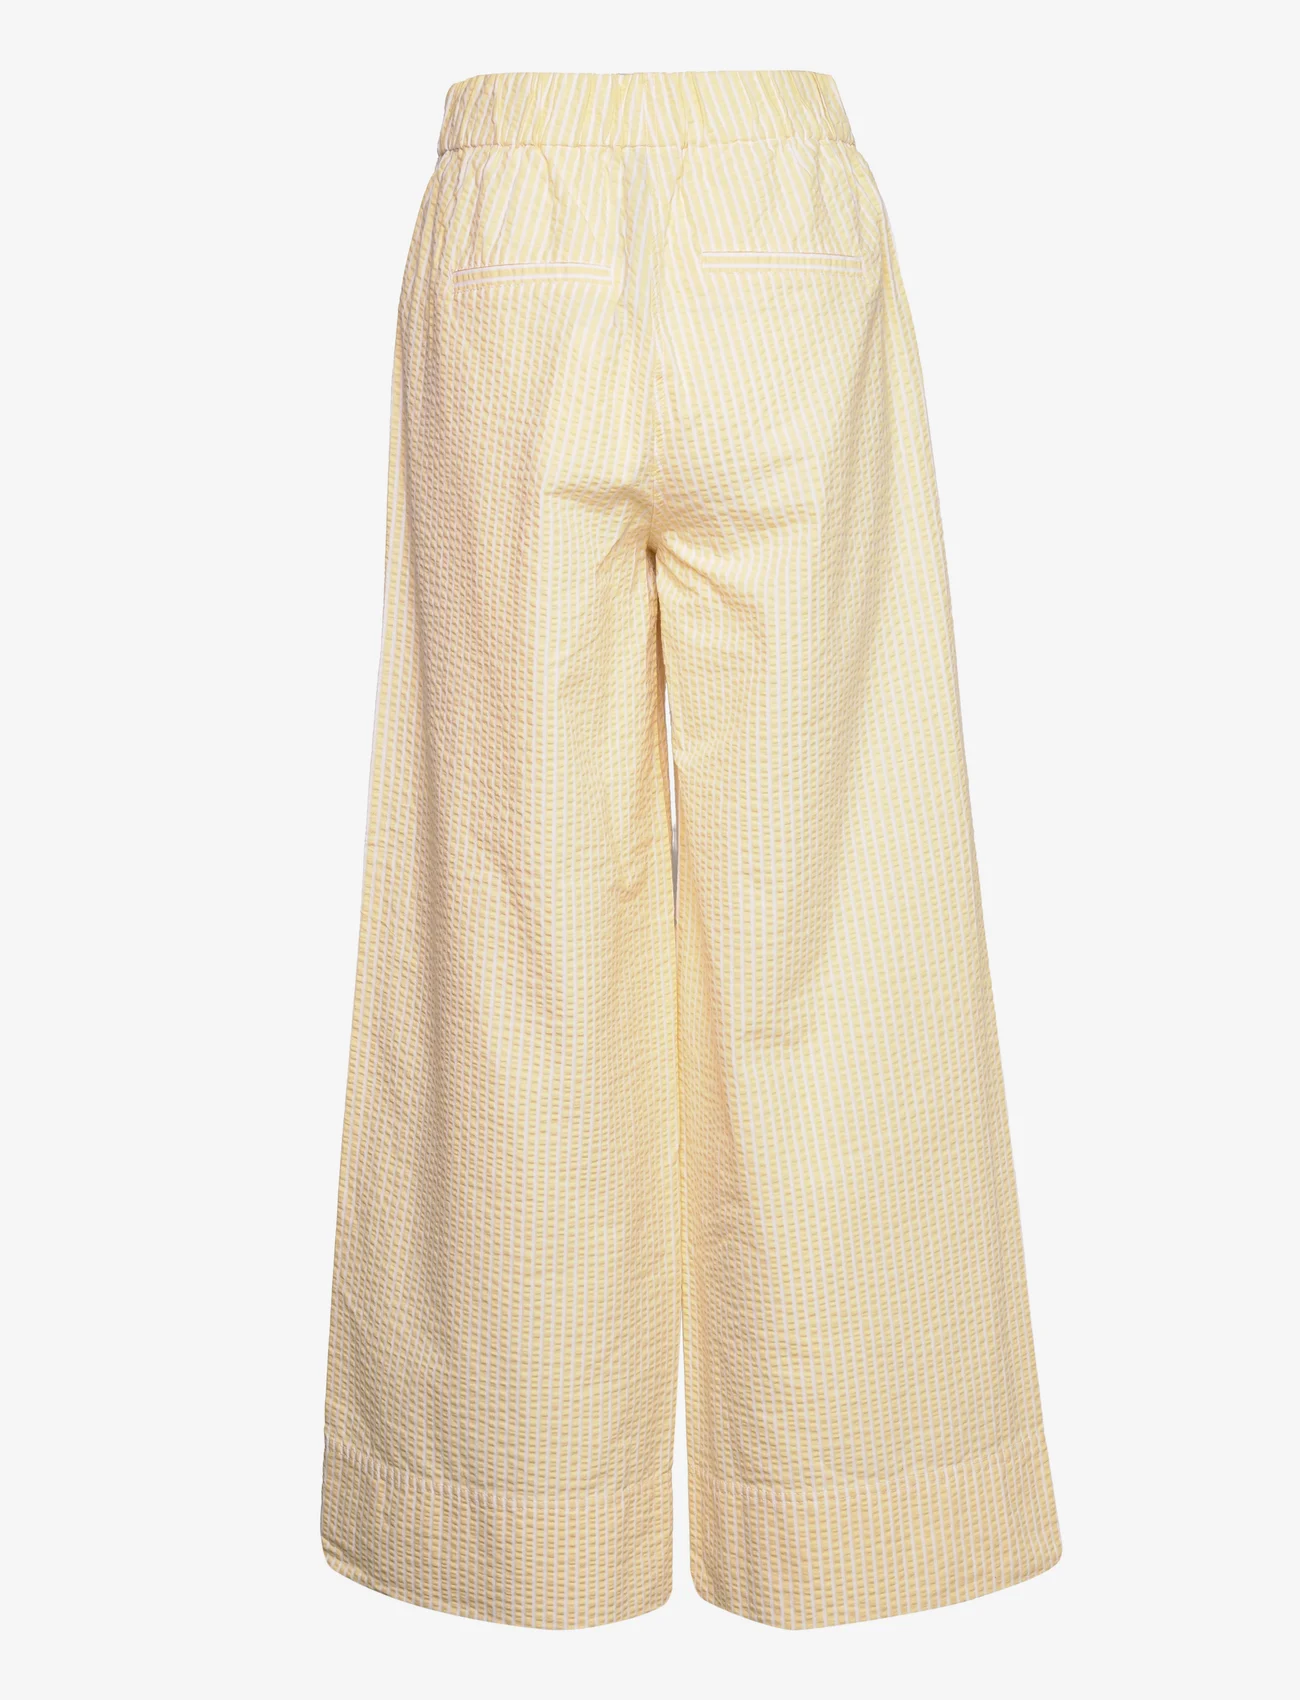 Second Female - Cairo Trousers - bukser med brede ben - golden haze - 1